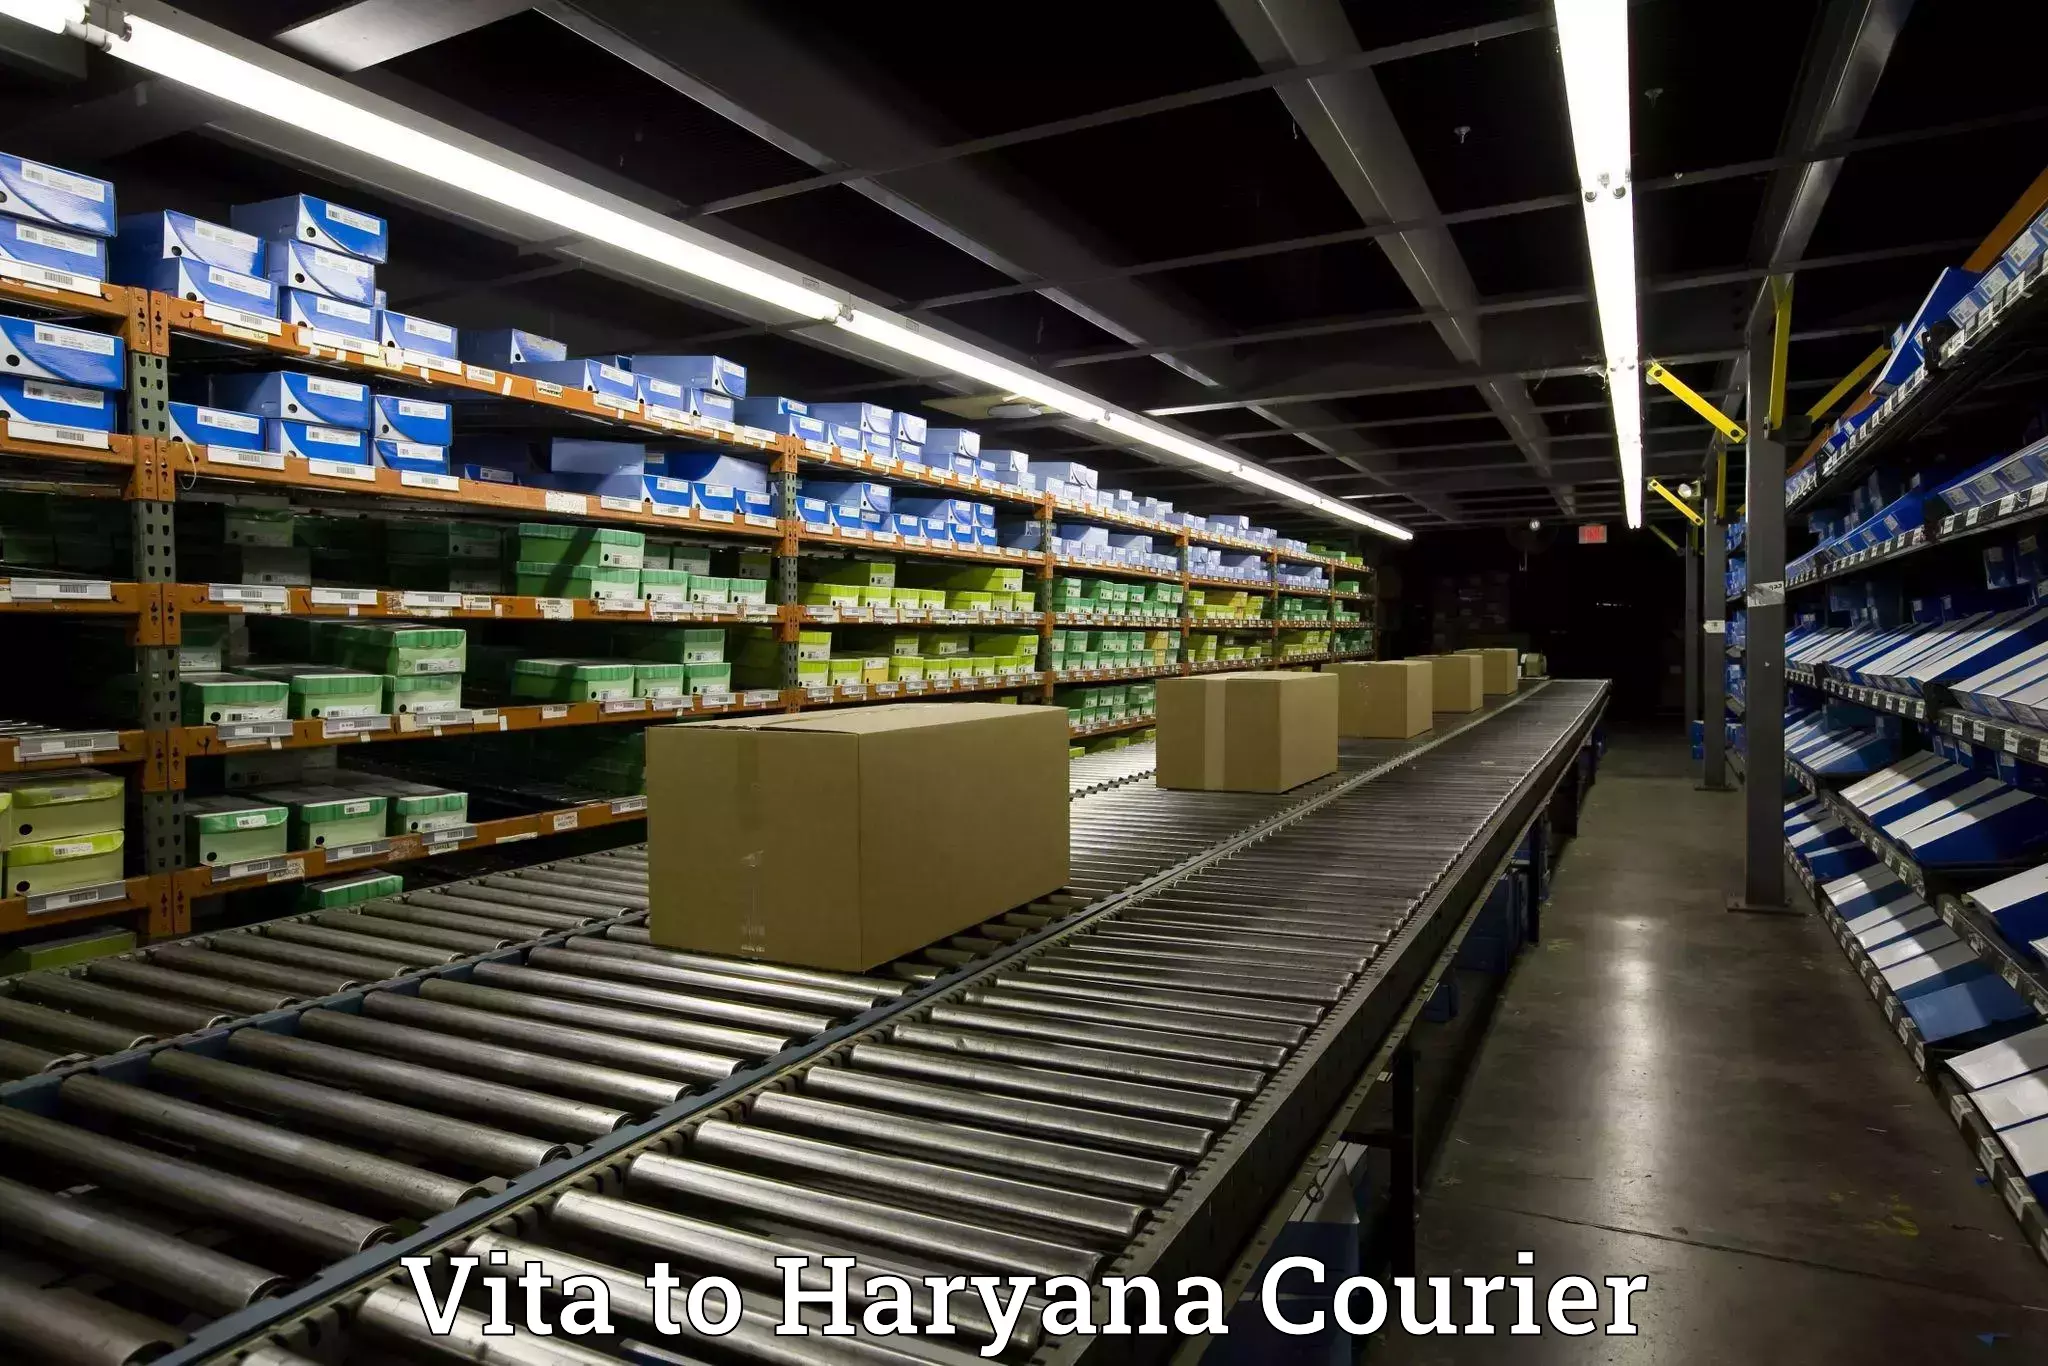 Efficient moving company Vita to Haryana